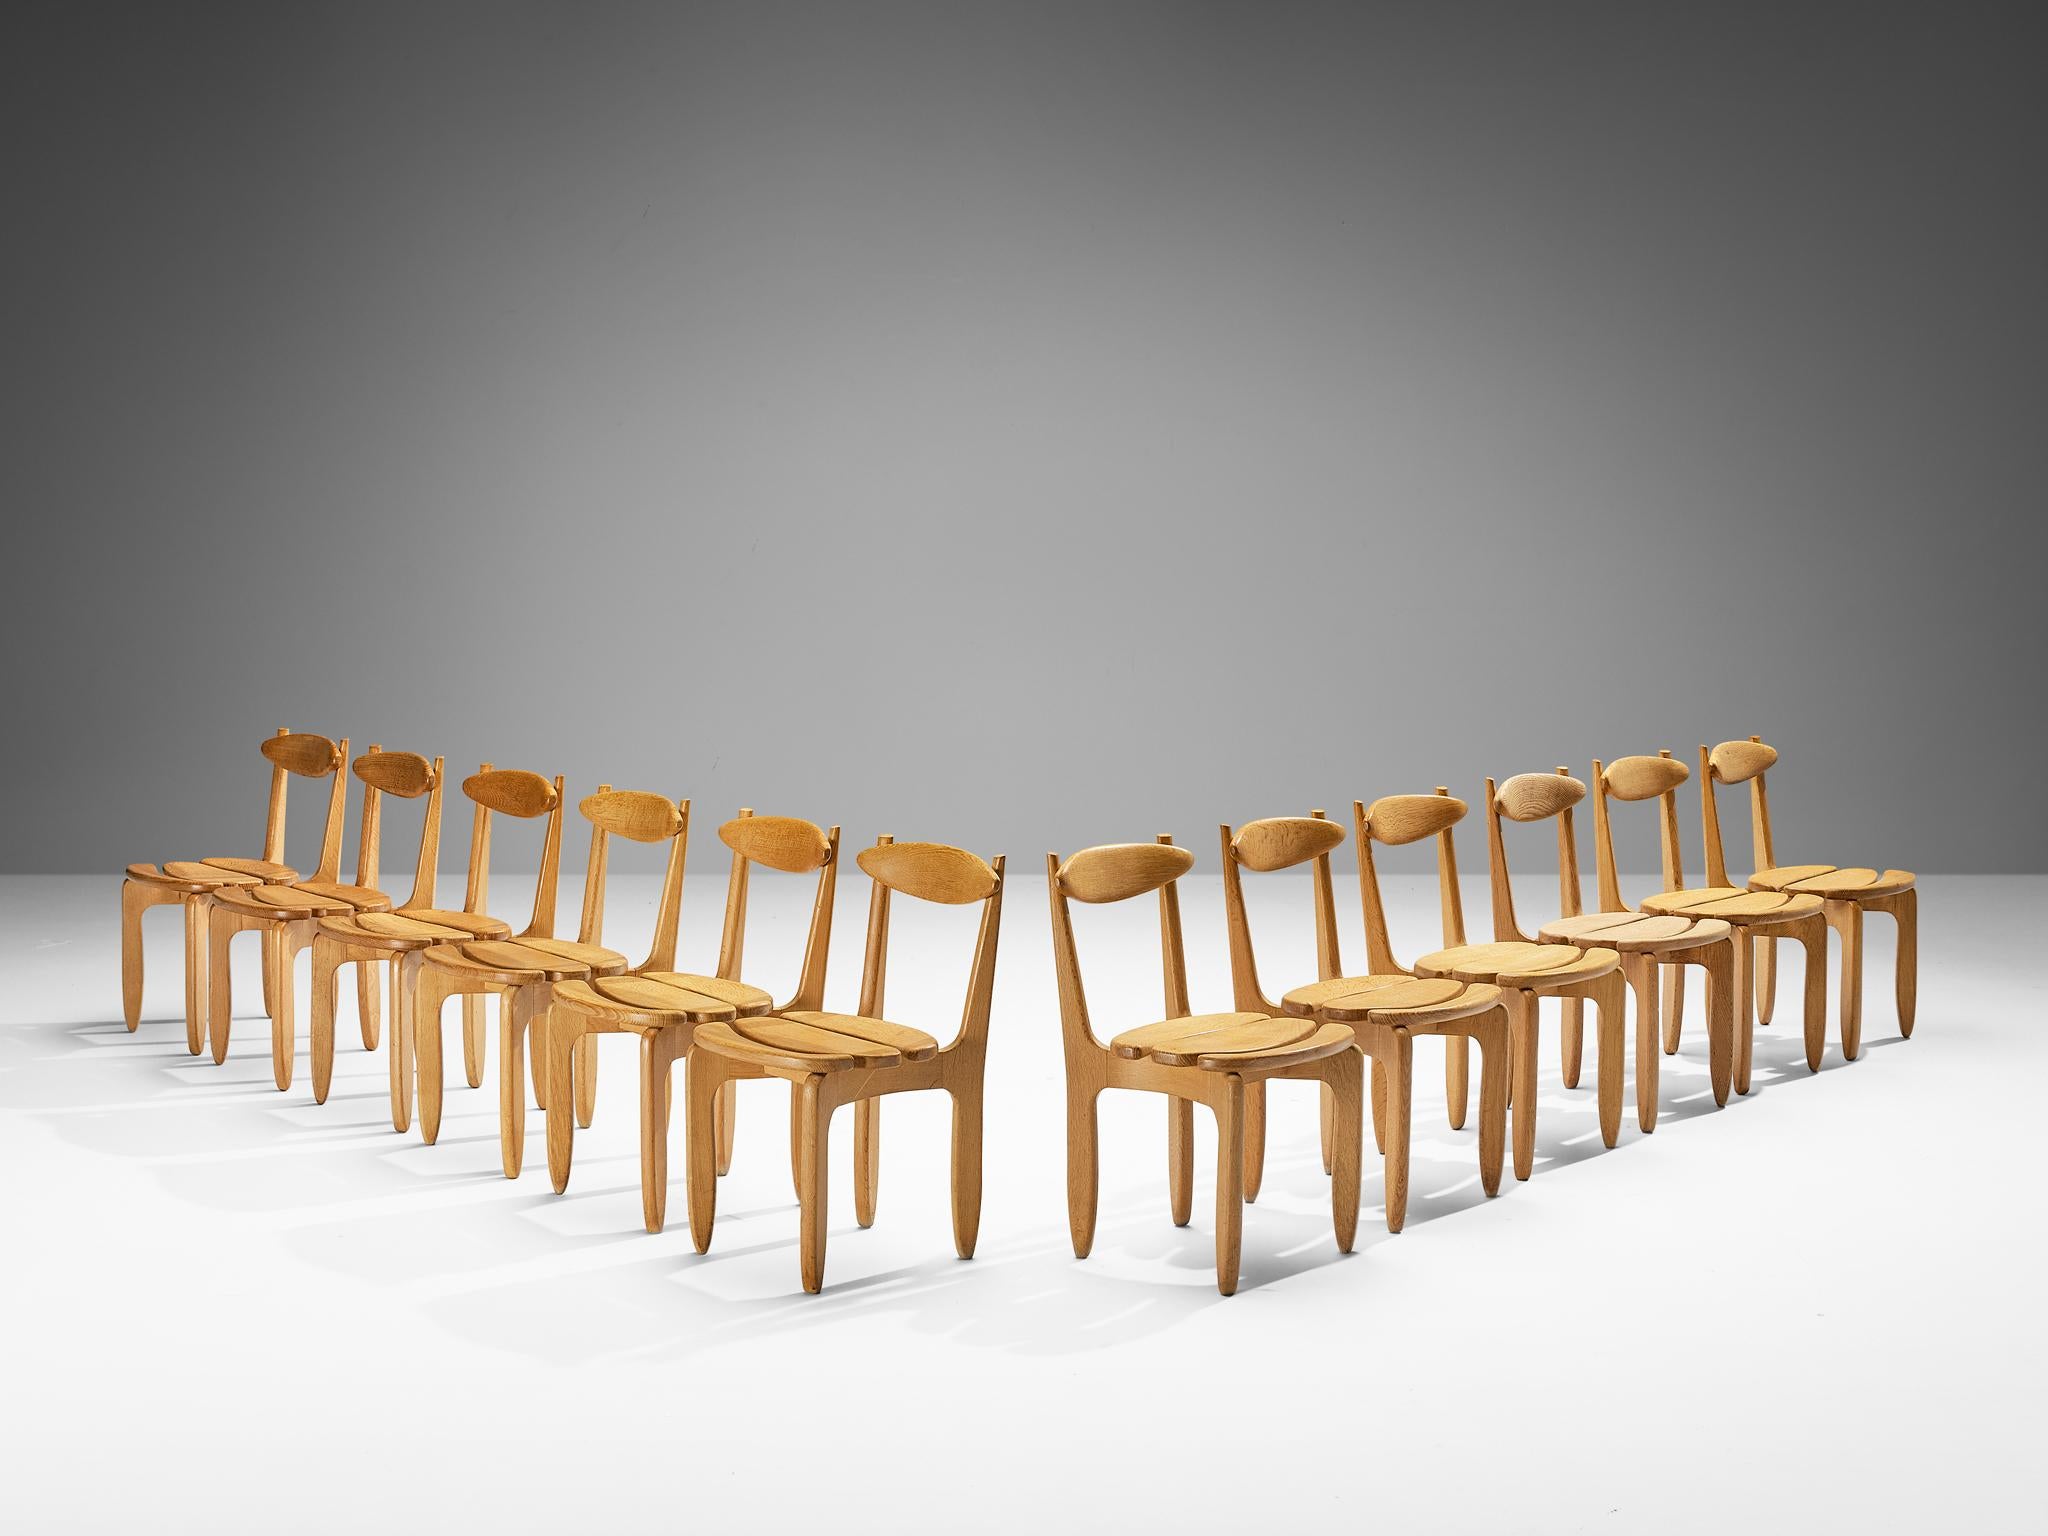 Guillerme et Chambron pour Votre Maison, ensemble de douze chaises de salle à manger, chêne, France, années 1960.

Ensemble de douze chaises de salle à manger élégantes et robustes en chêne massif par Guillerme et Chambron. Ces chaises montrent le